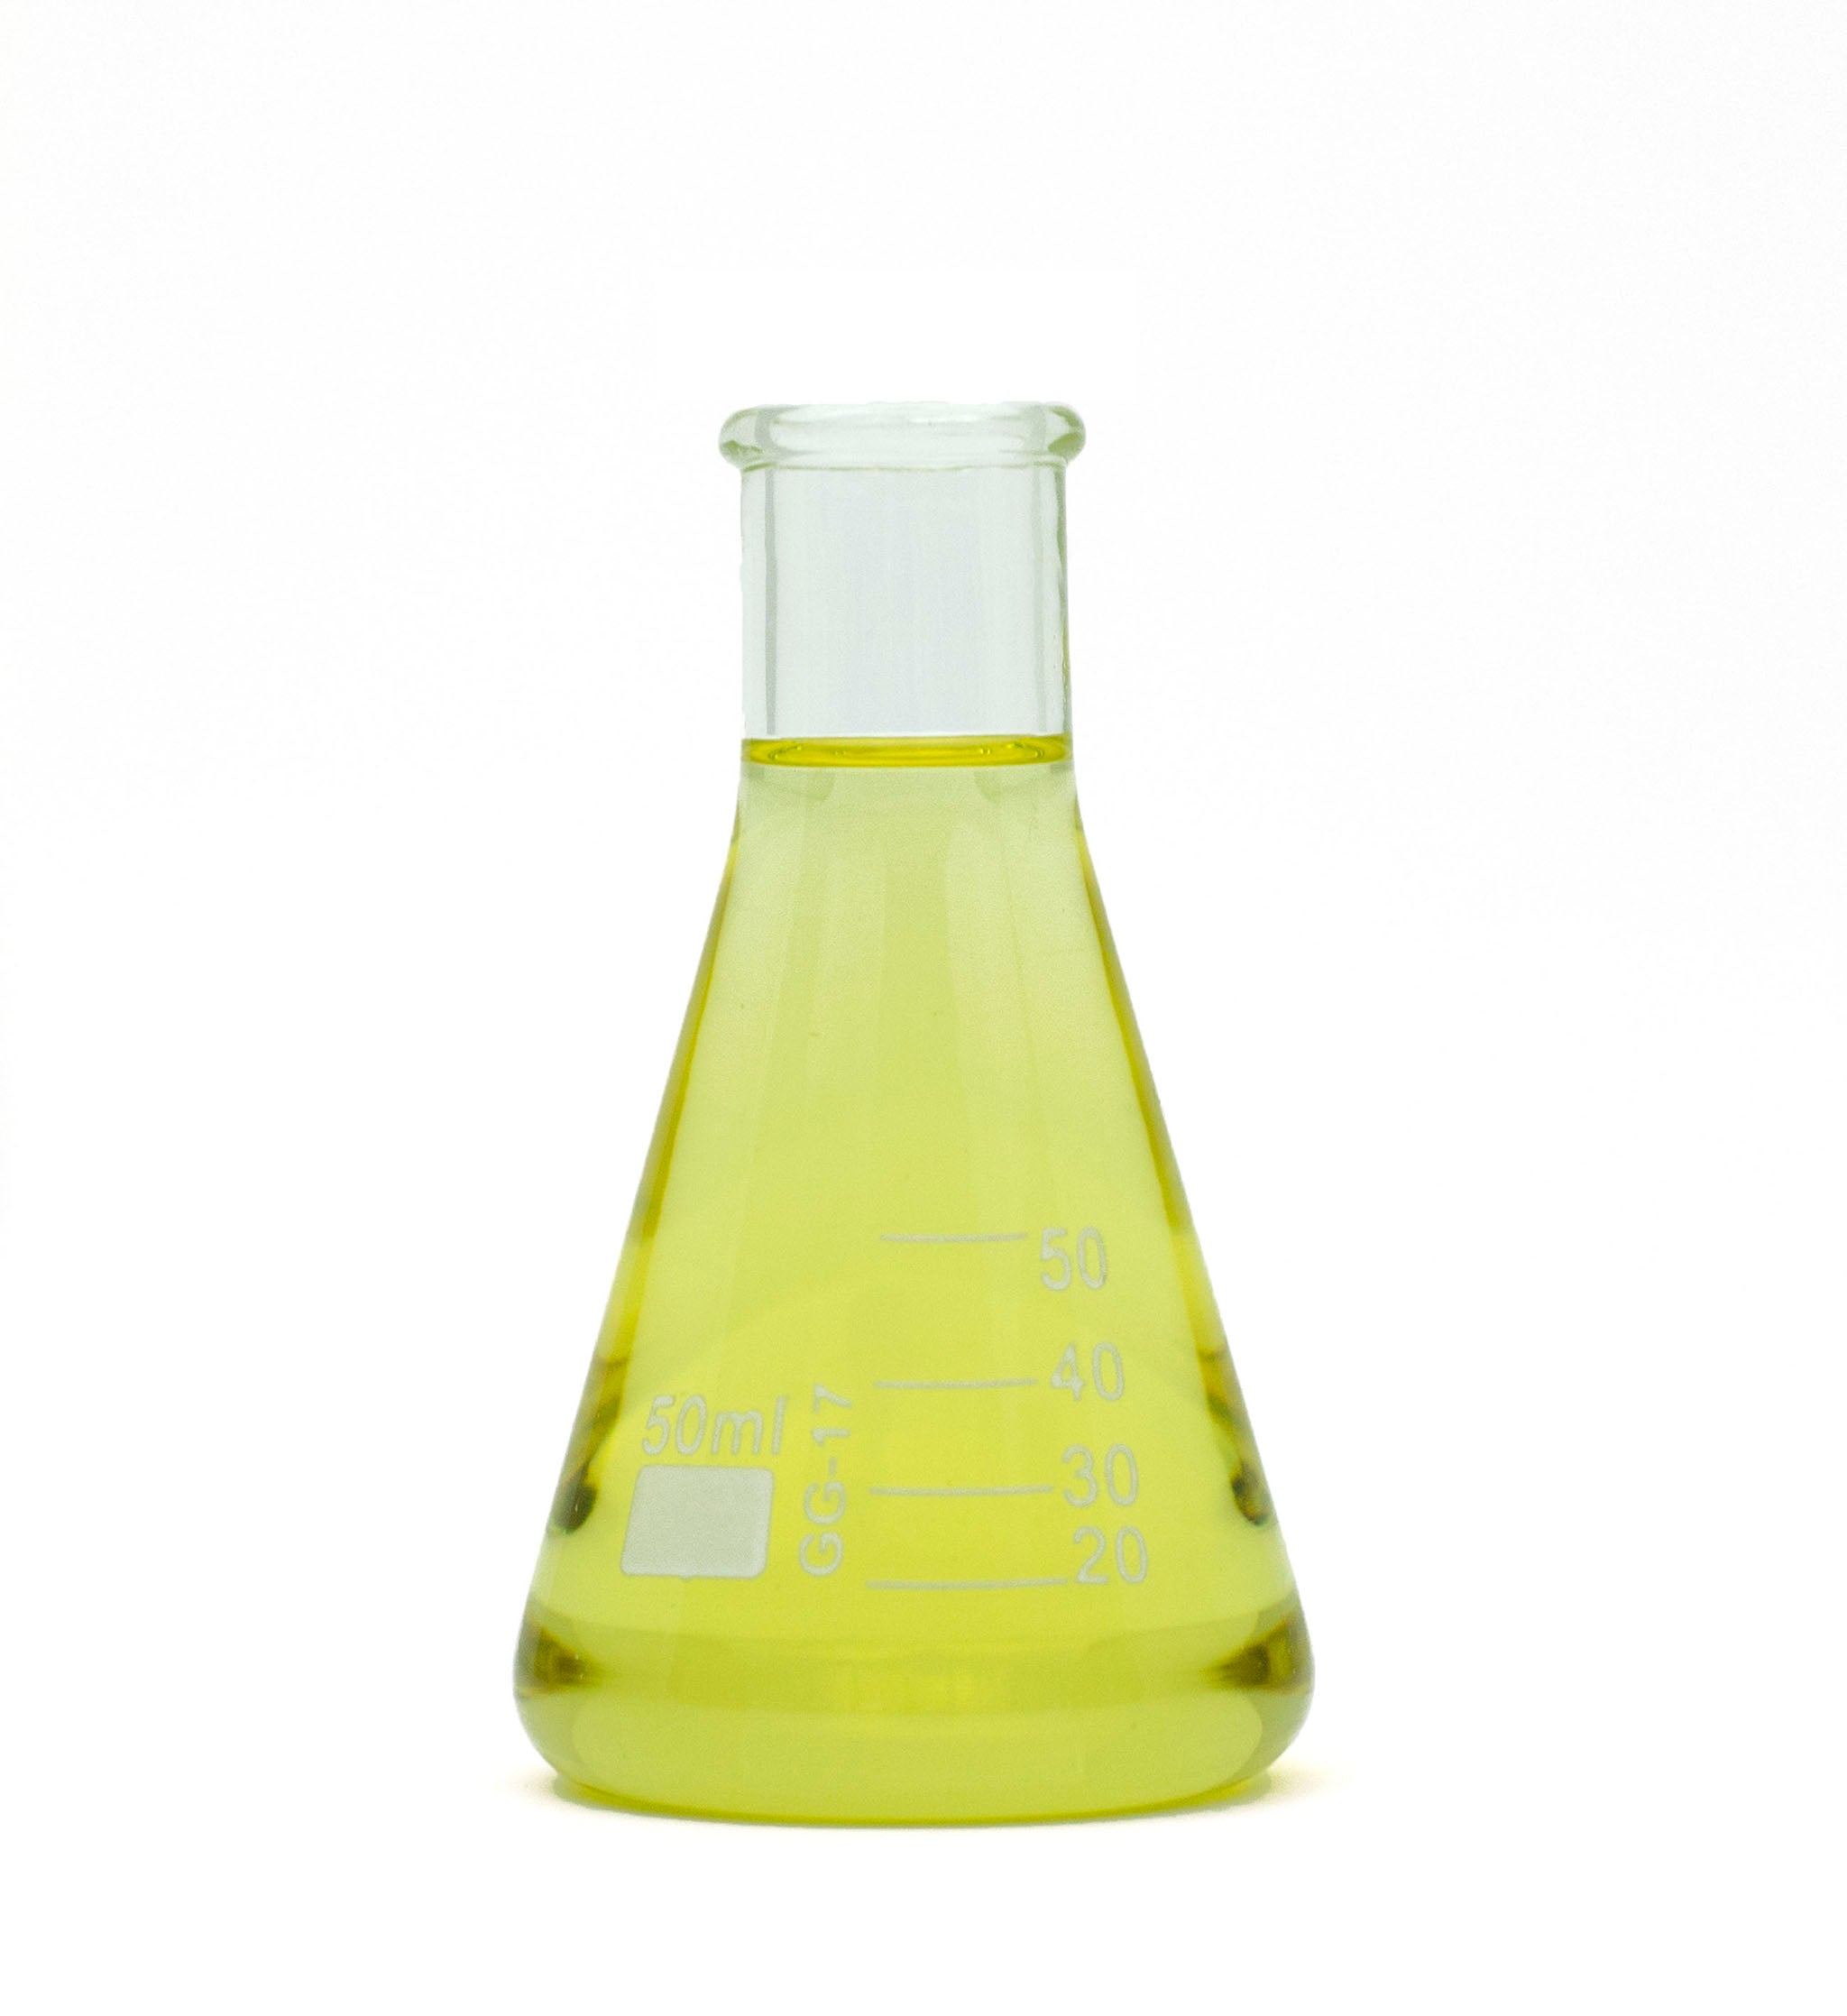 Citronella essential oil in beaker